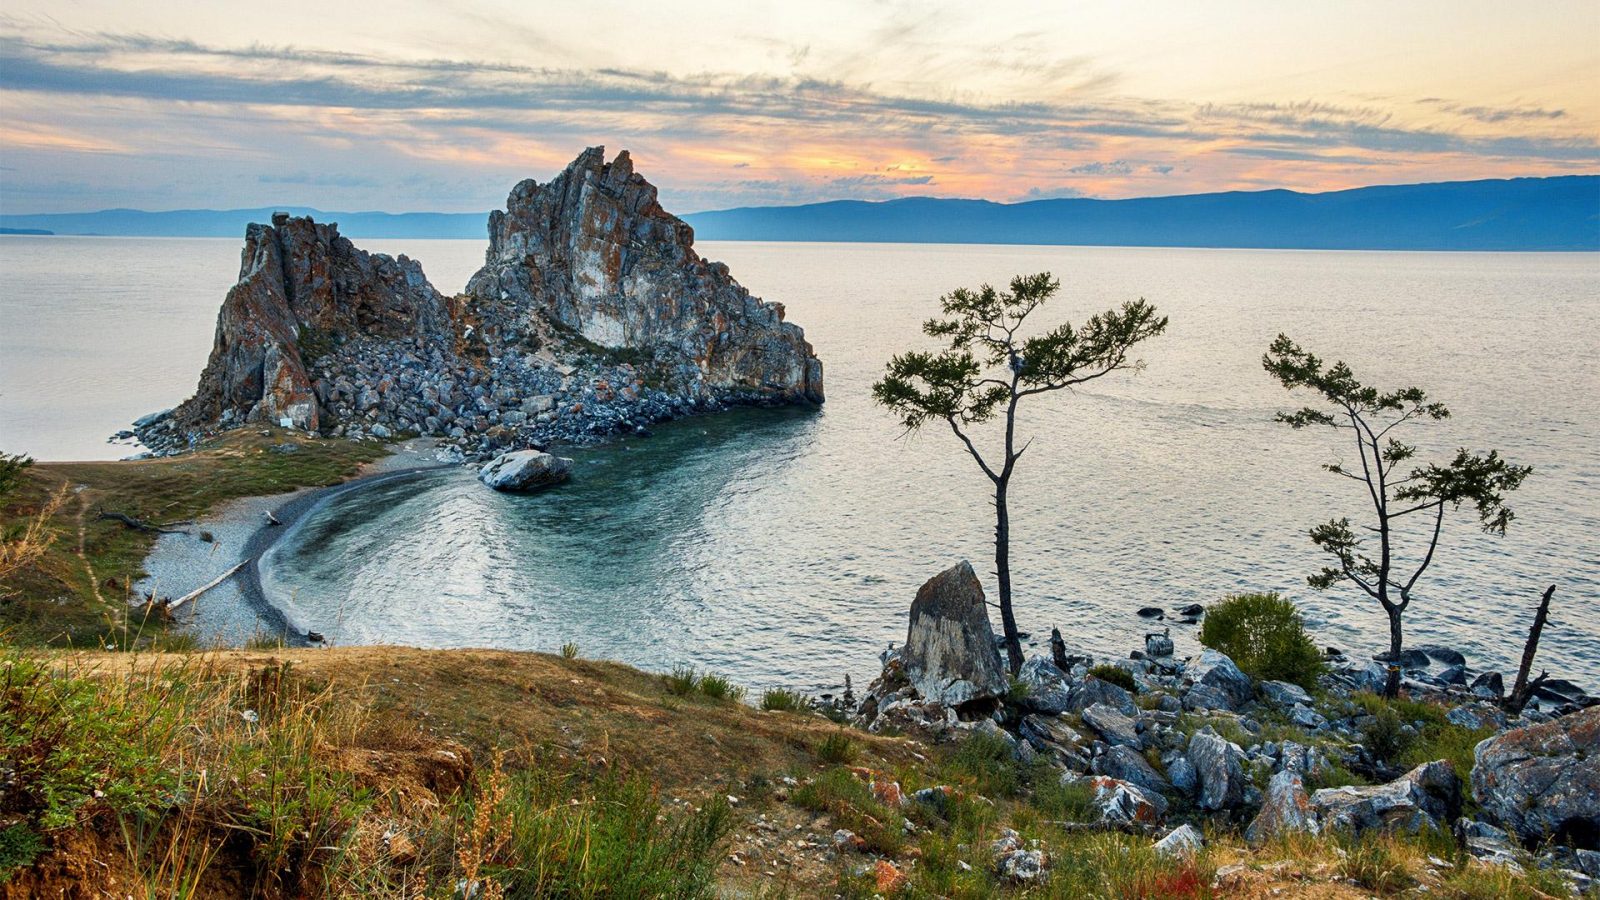 5lnUR - Где отдохнуть весной 2020 в России на море